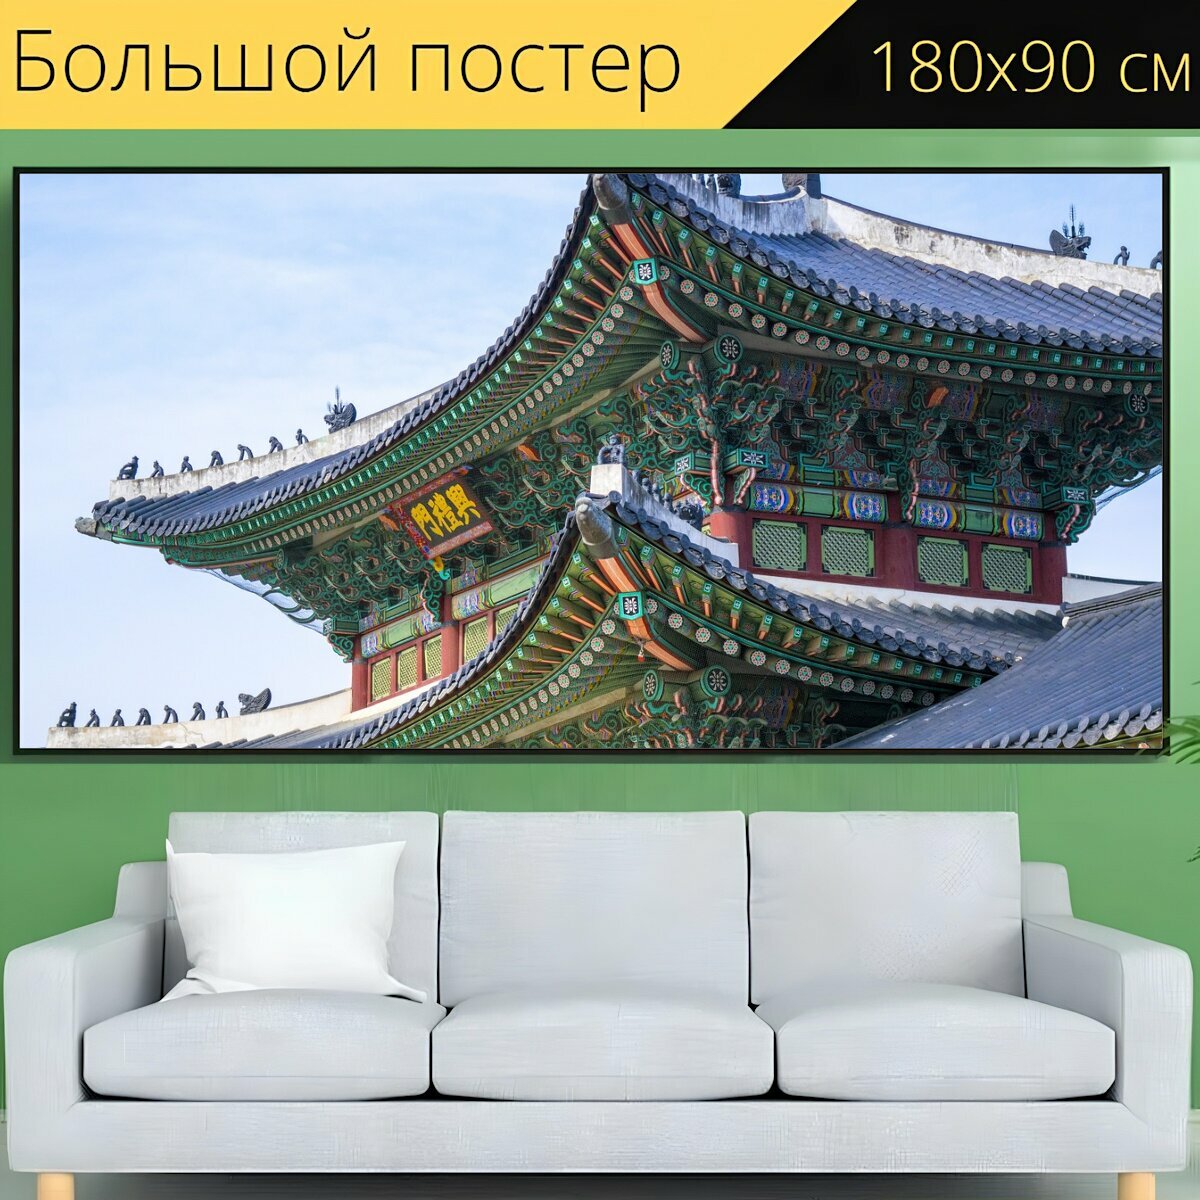 Большой постер "Китайский язык, дом, китай" 180 x 90 см. для интерьера